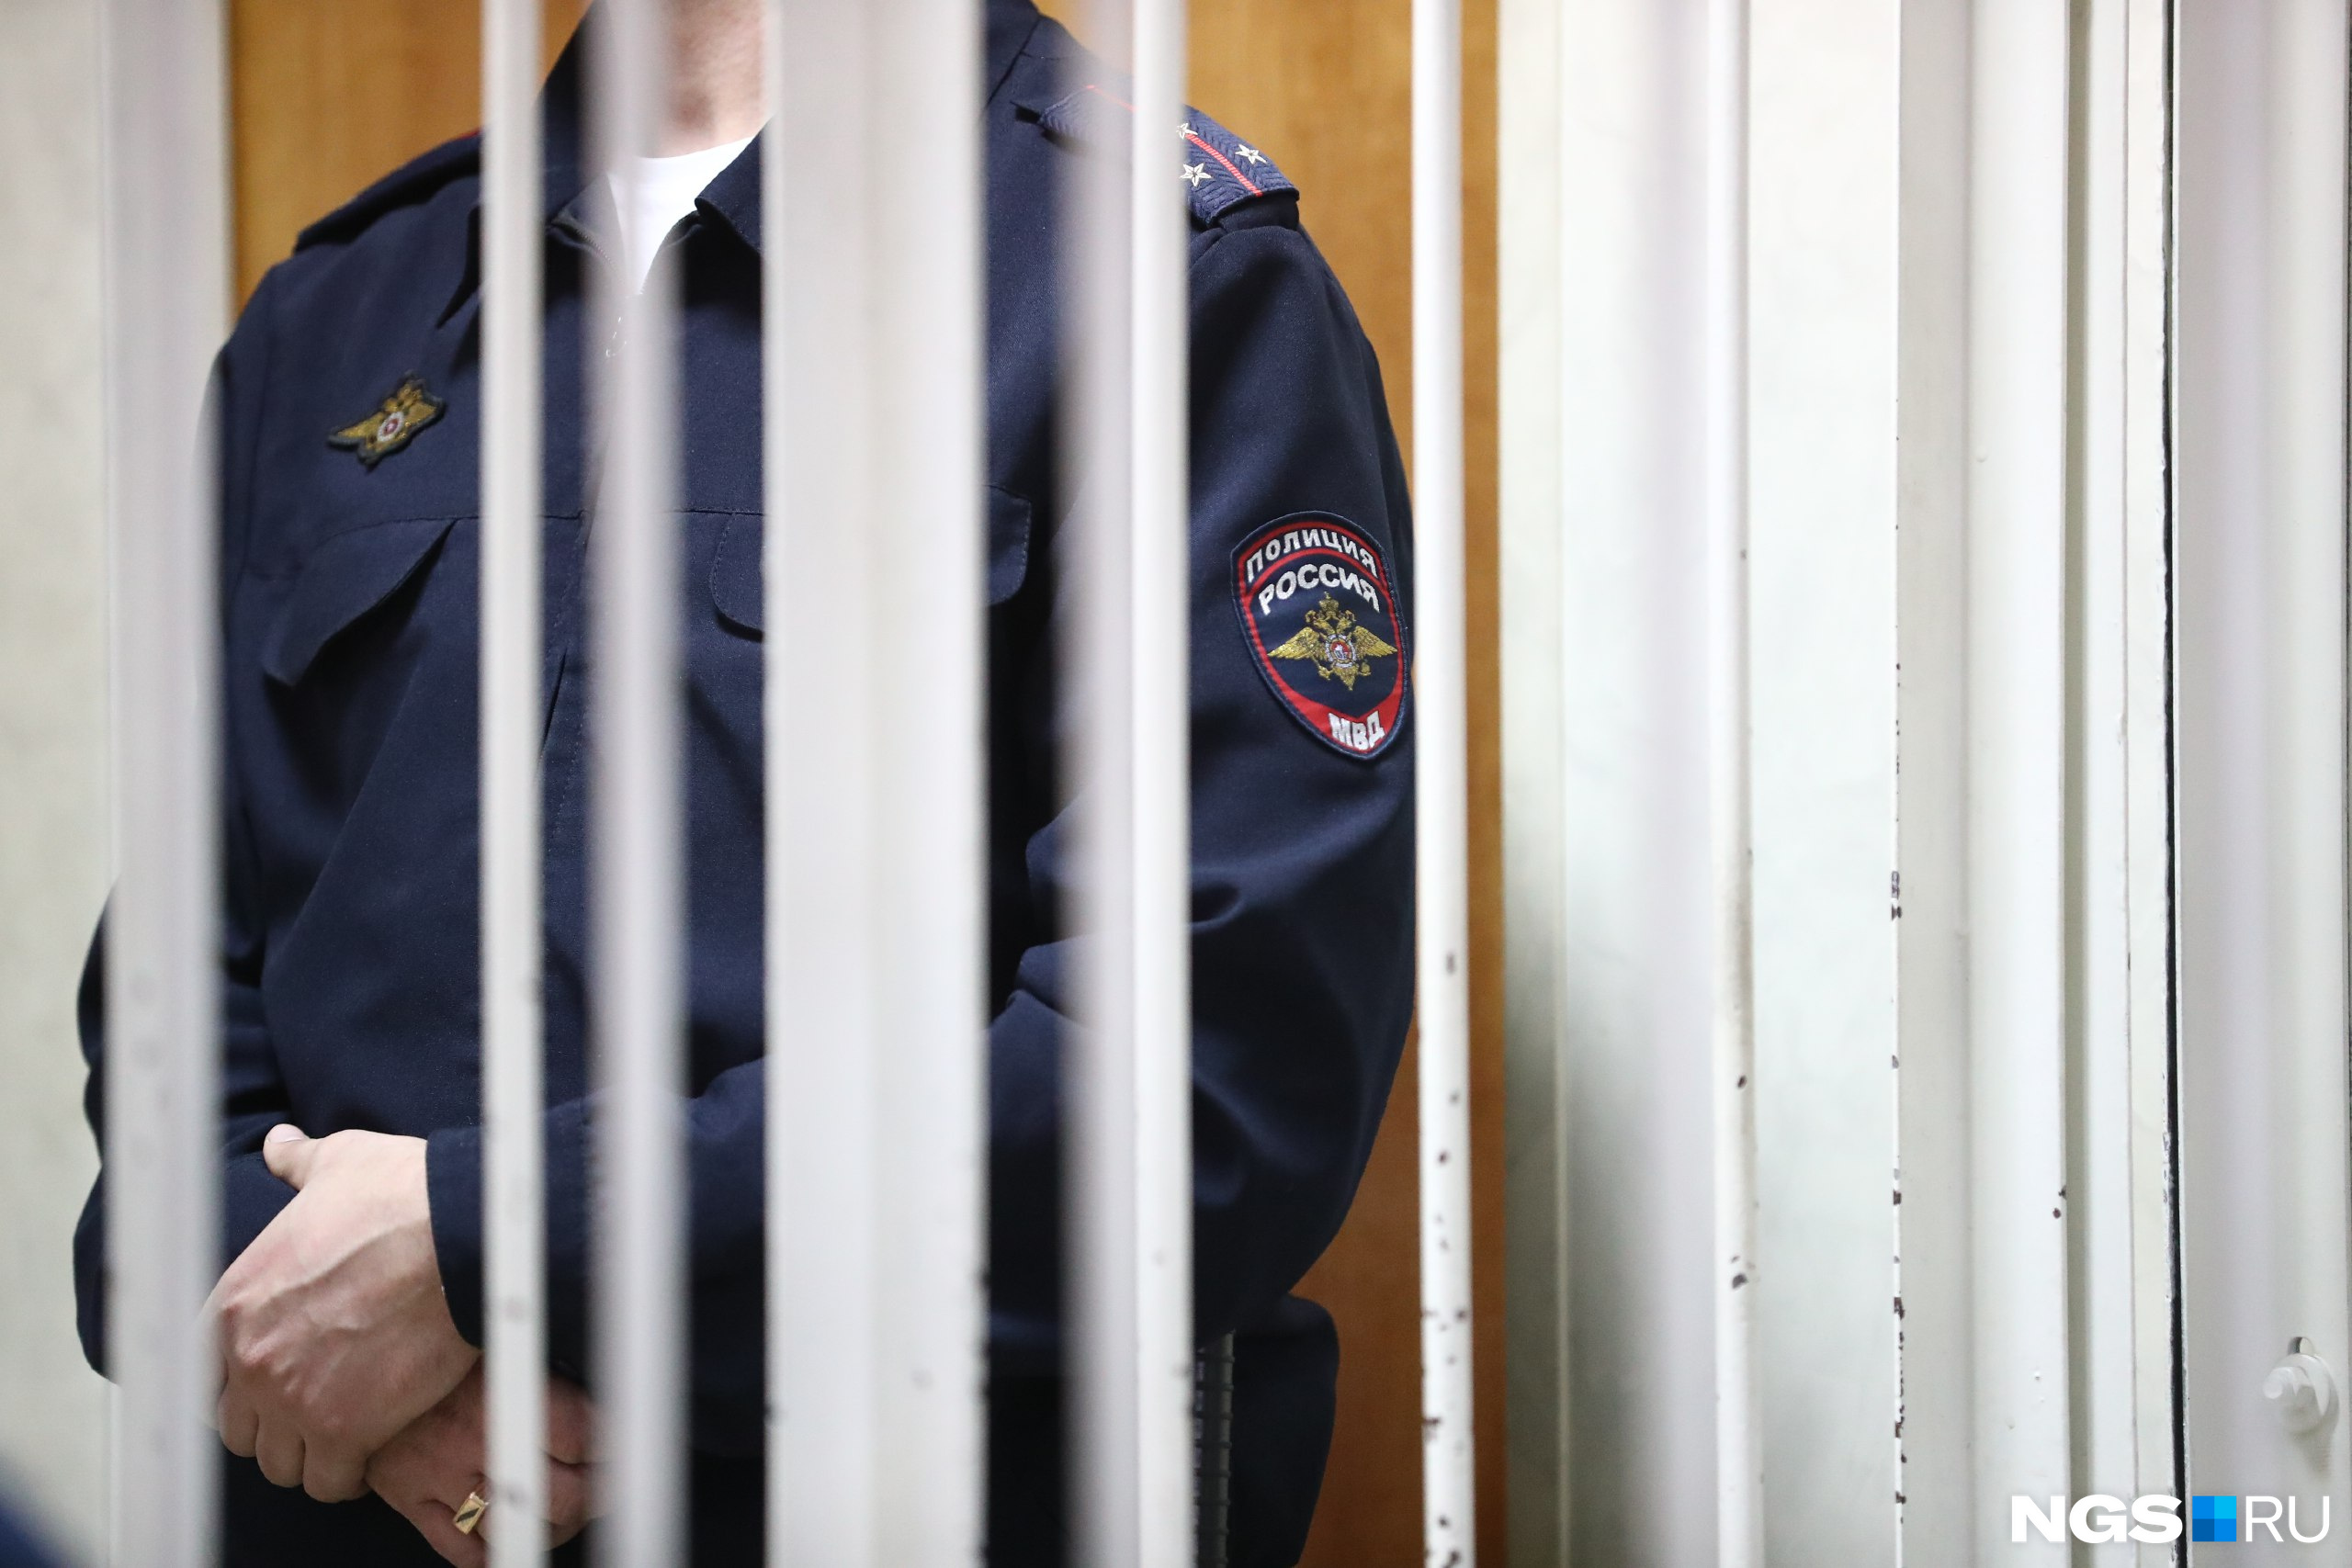 Считается, что Захаров незаконно получил 2 миллиона рублей